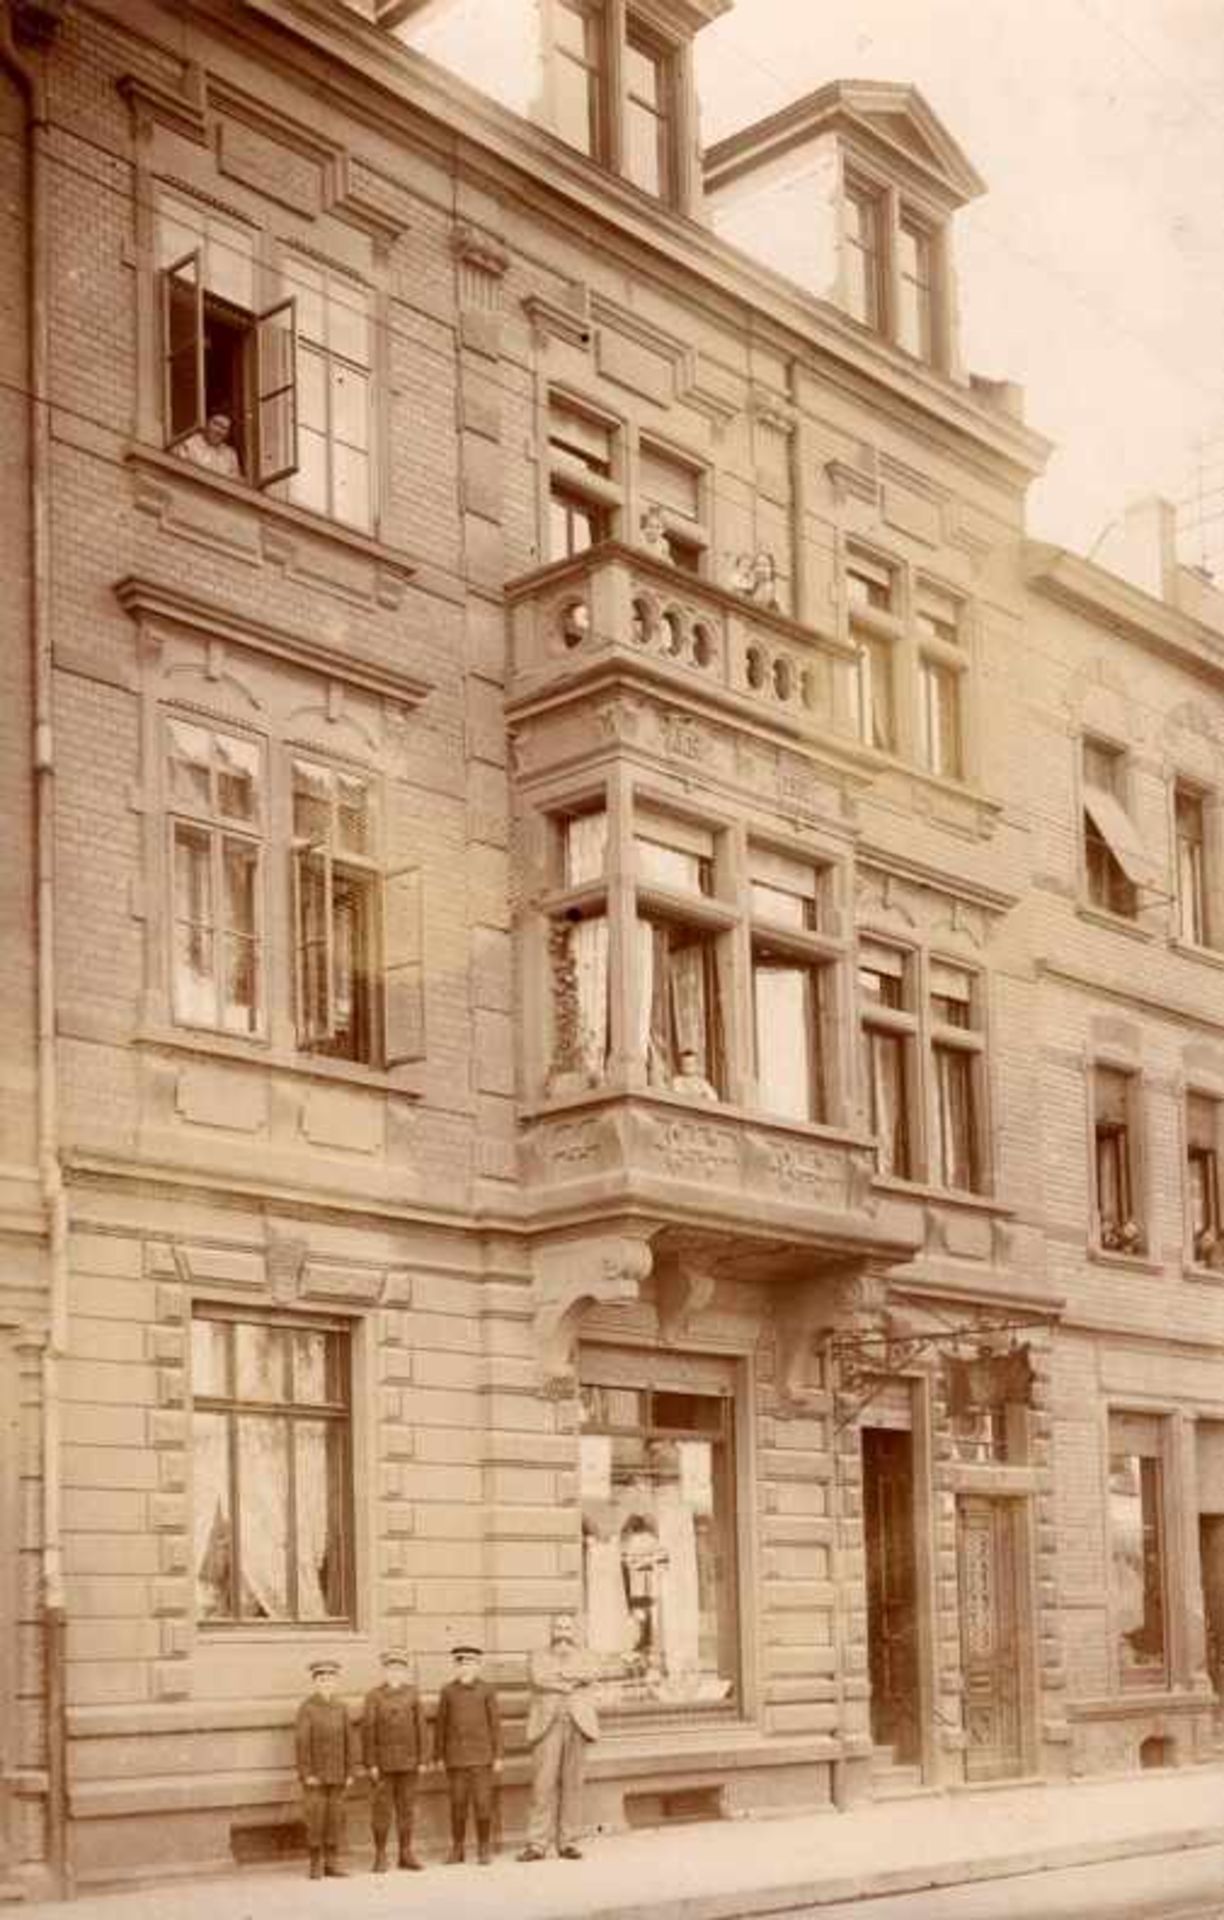 1 Foto-AK, kleines Format, s/w, Rupps Haus in der Neckarauerstr. 83, Mannheim, 1908, ungelaufen, I-